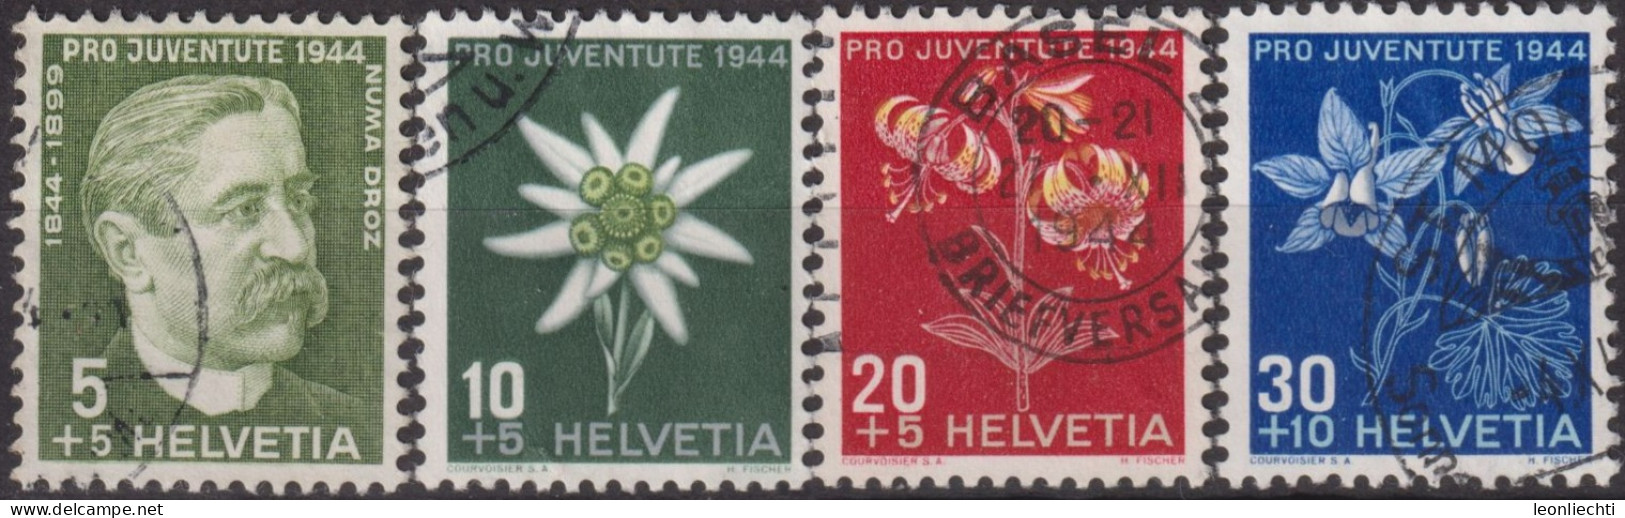 1944 Schweiz Pro Juventute ° Mi:CH 439-442, Yt:CH 399-402, Zum:CH J109-112, Numa Droz Und Alpenblumen - Used Stamps